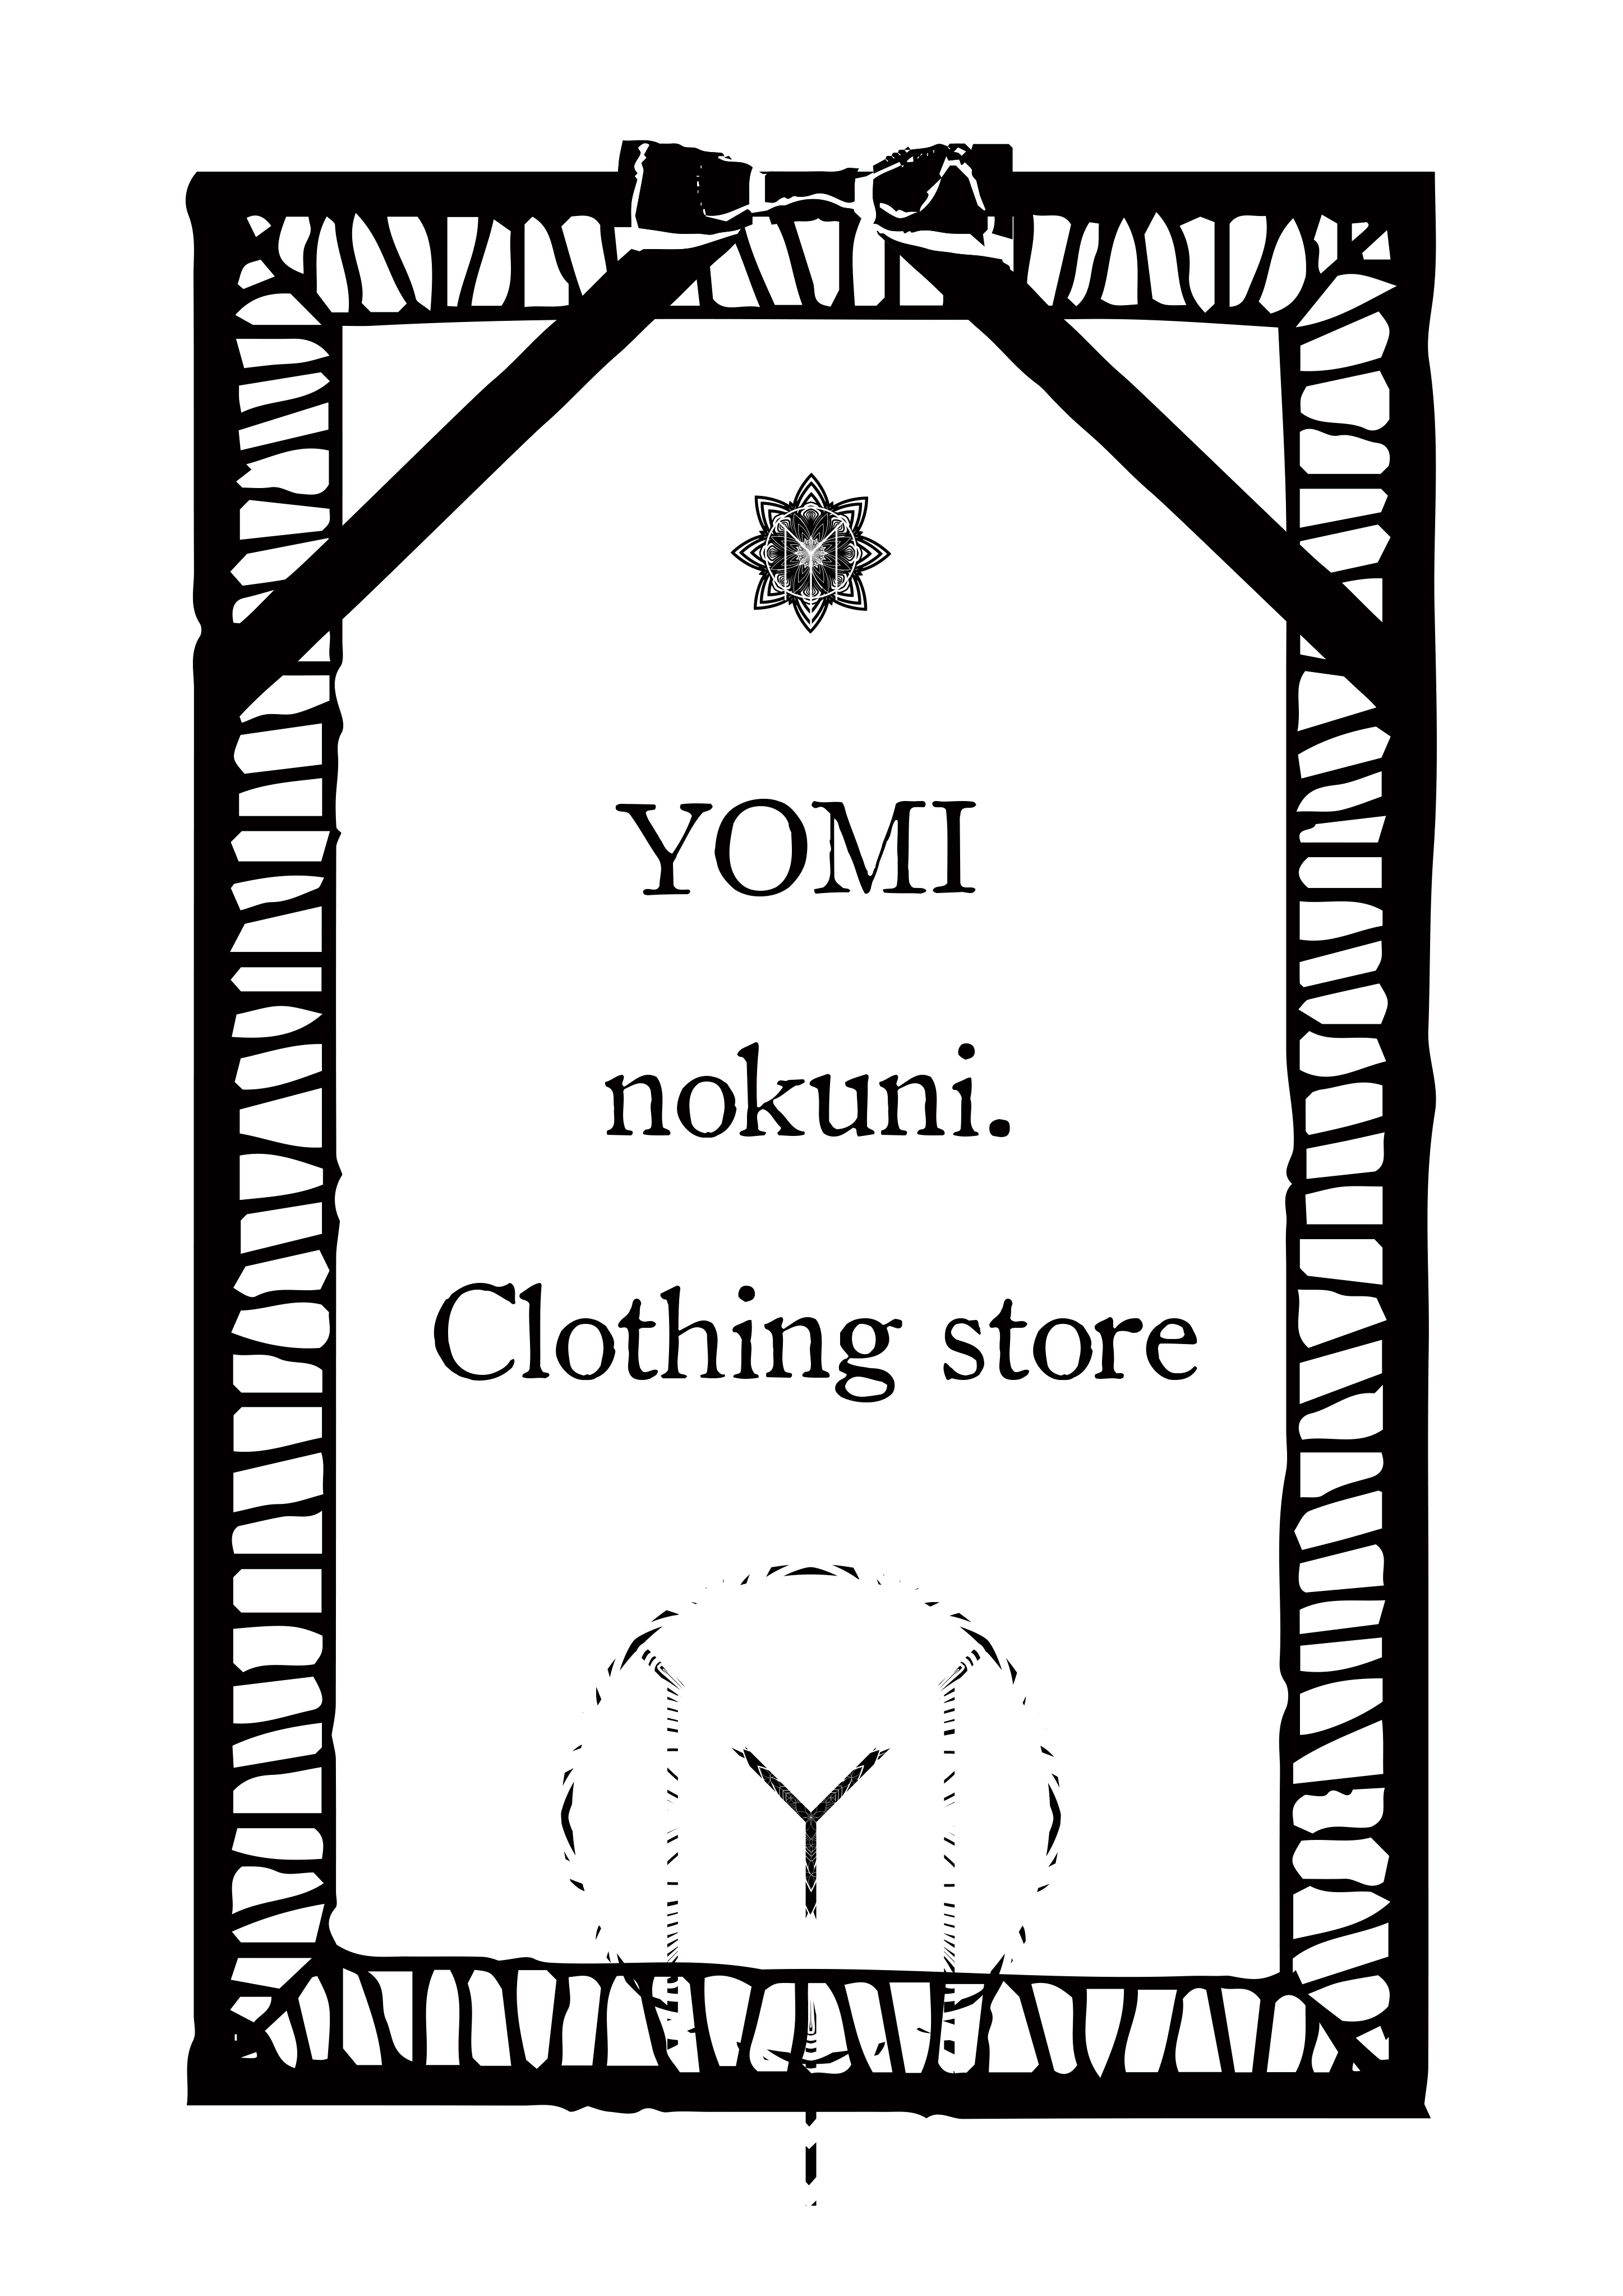 YOMI nokuni.Clothing store